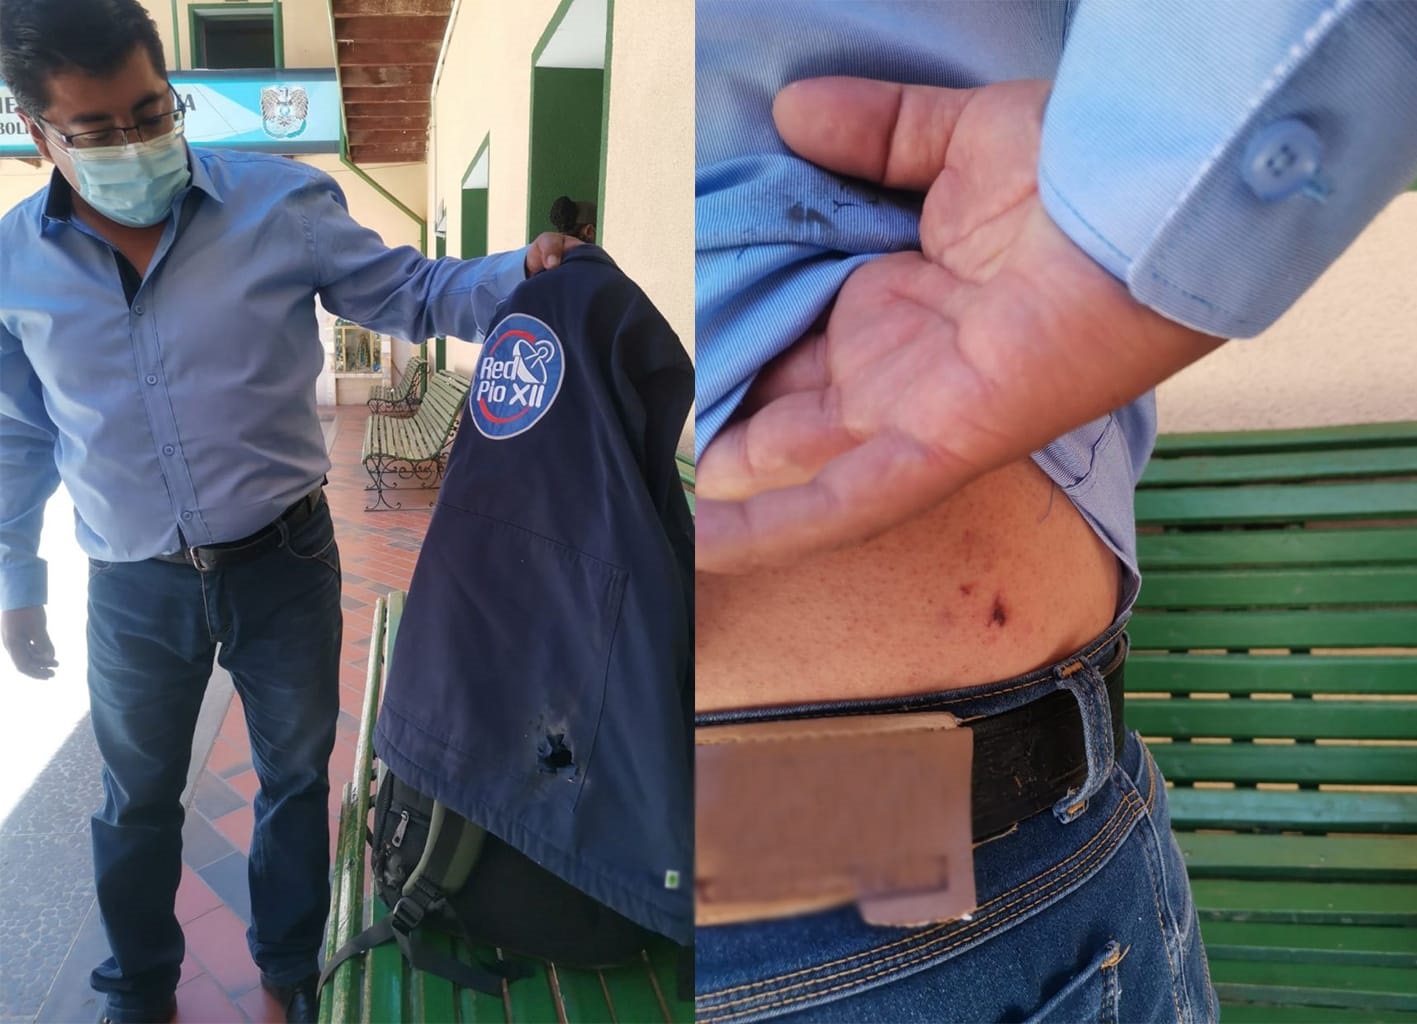 Periodistas golpeados por policías y atacados con juegos de pirotecnia